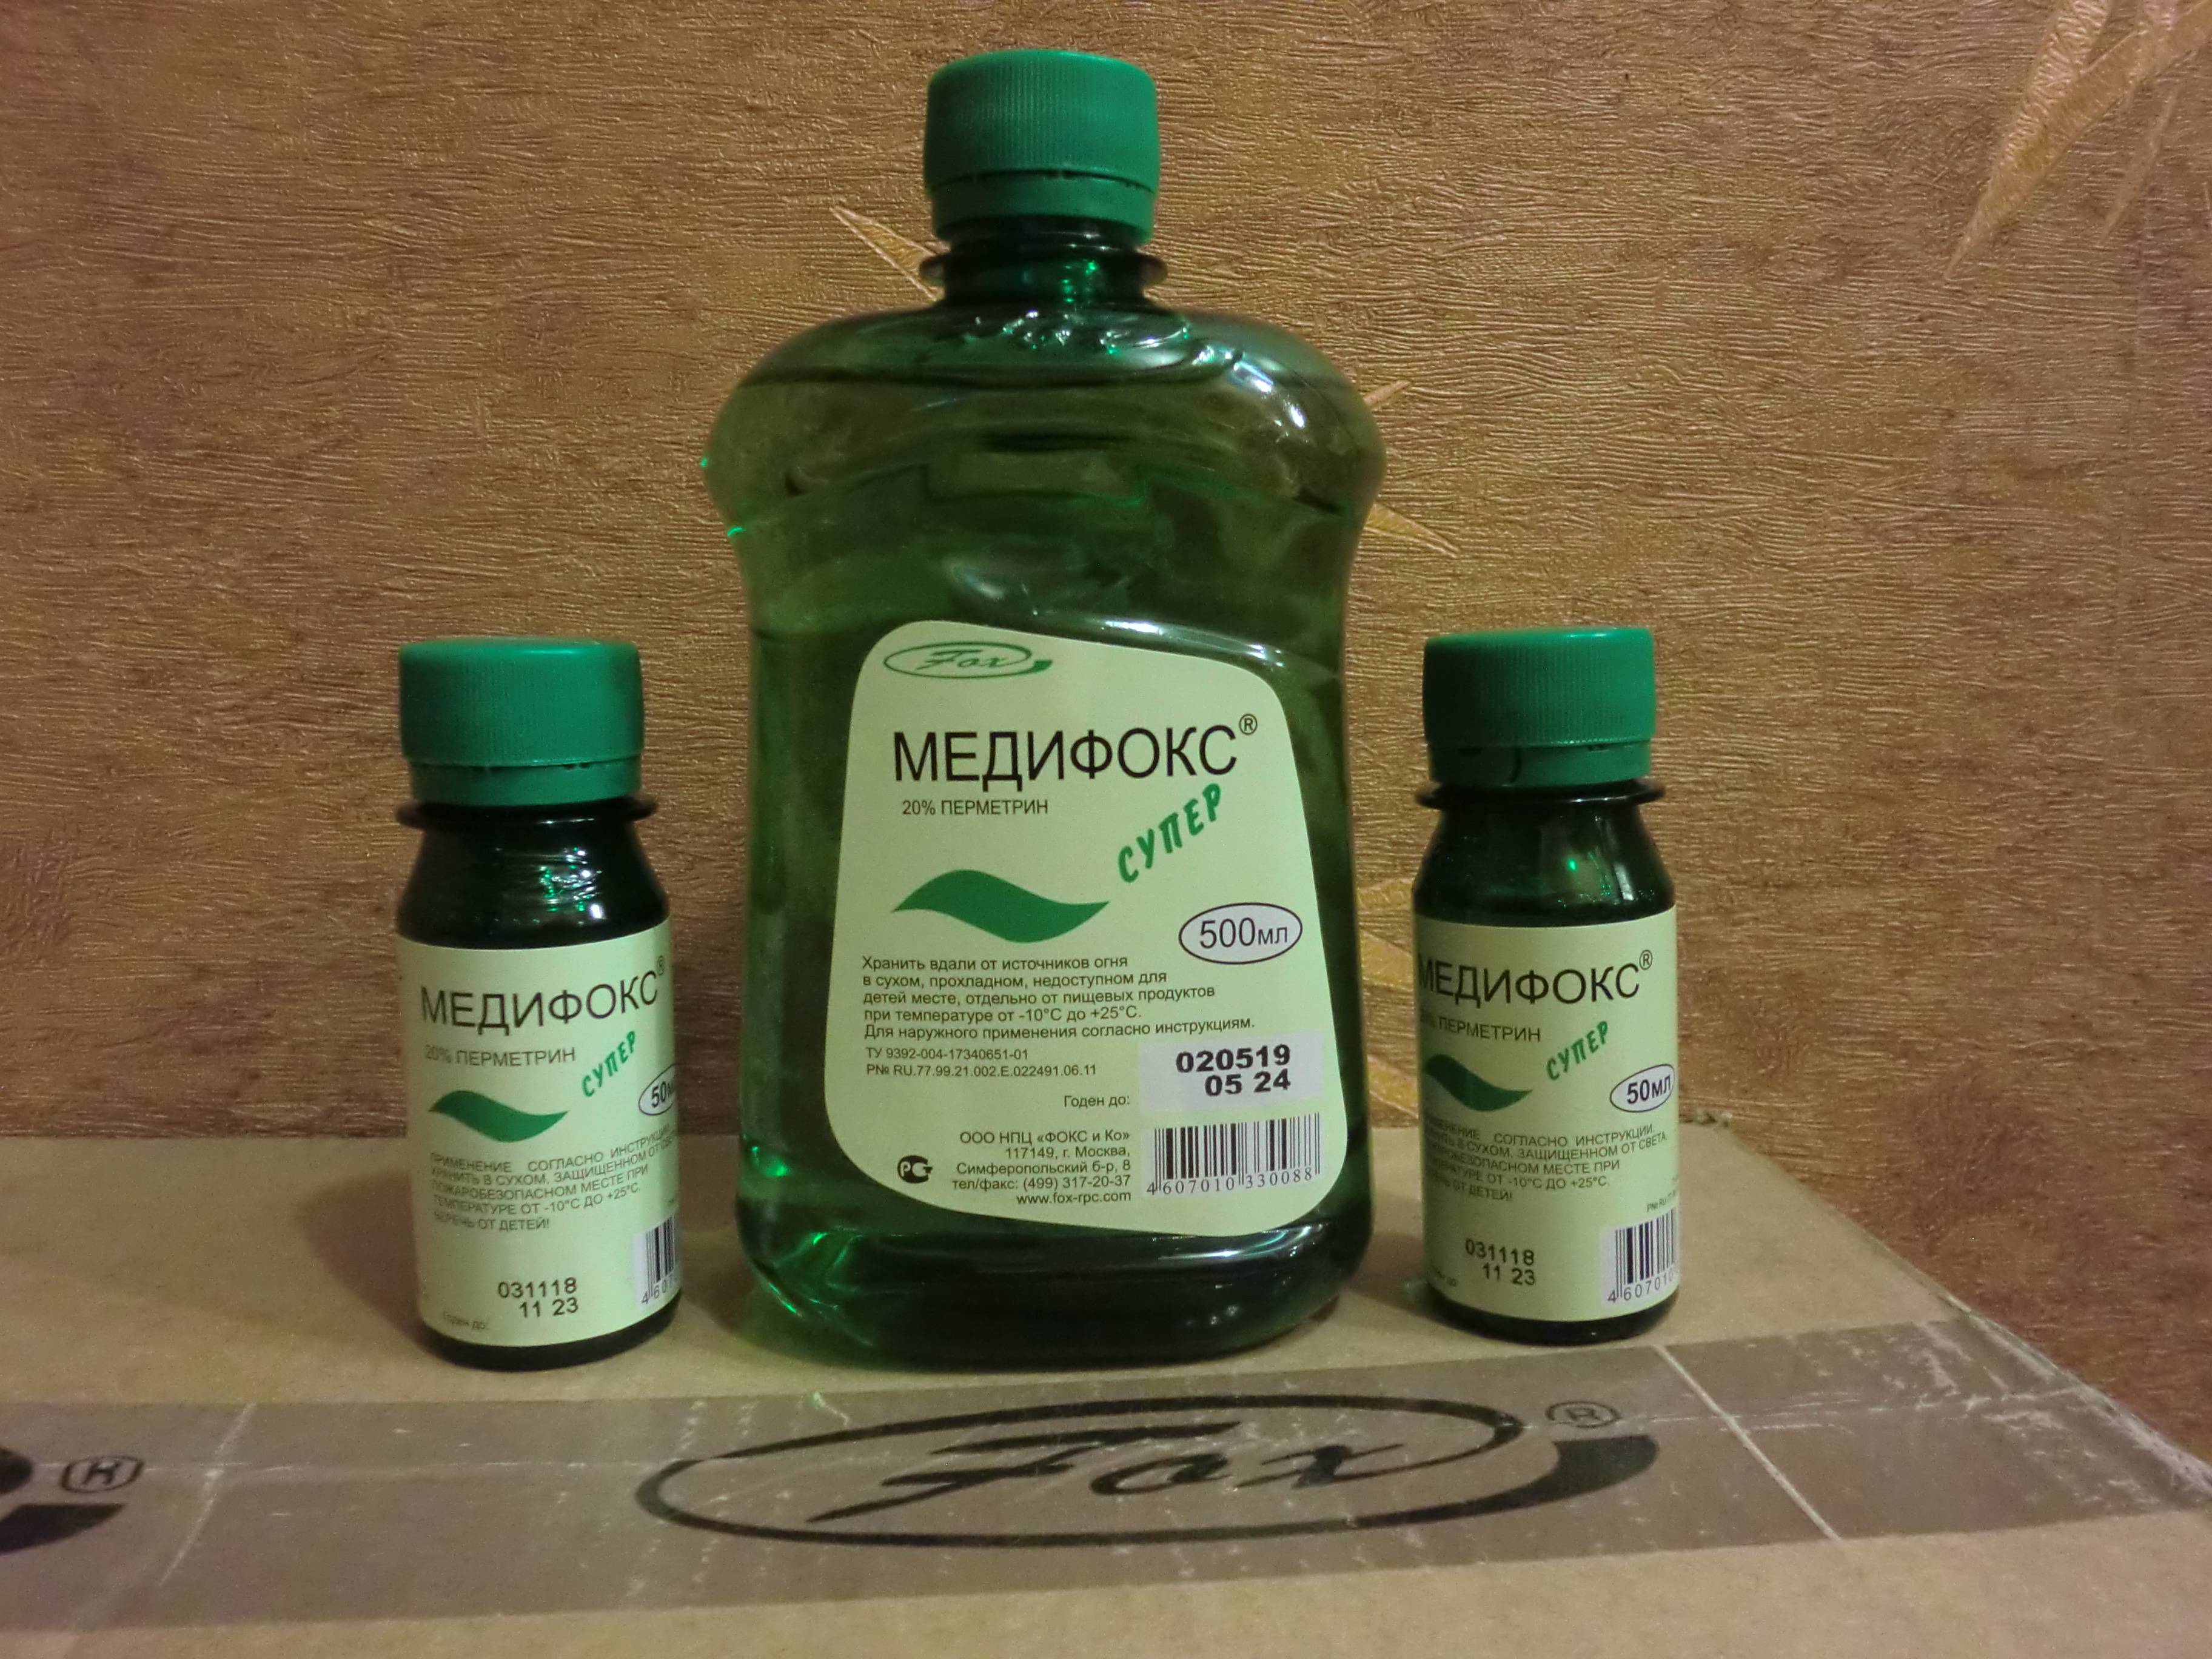 Медифокс — препарат для лечения педикулеза и чесотки | | красота и питание - все о зож